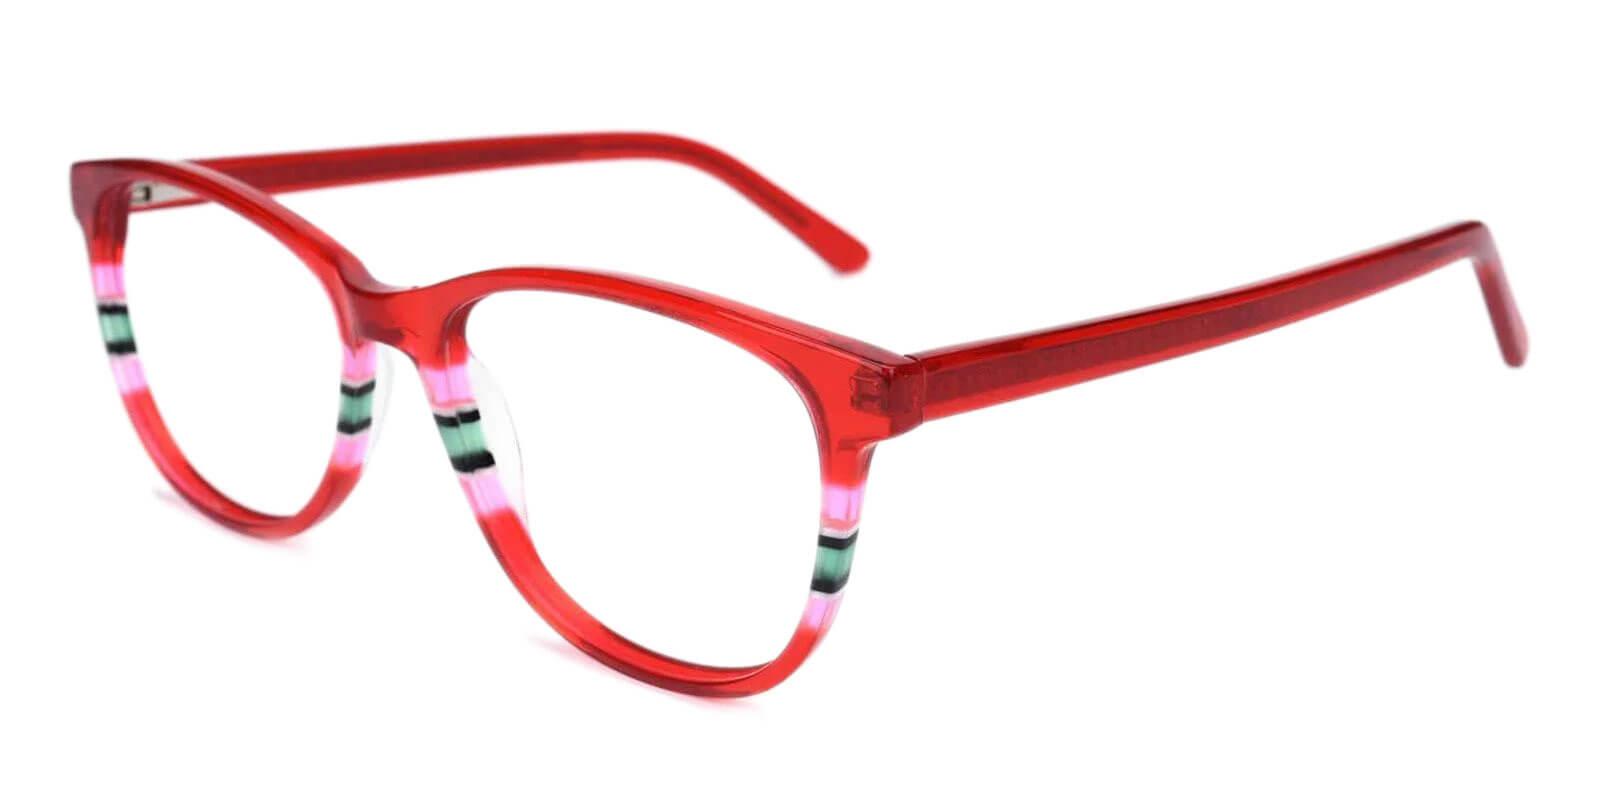 Vltava Red Acetate Eyeglasses , UniversalBridgeFit Frames from ABBE Glasses